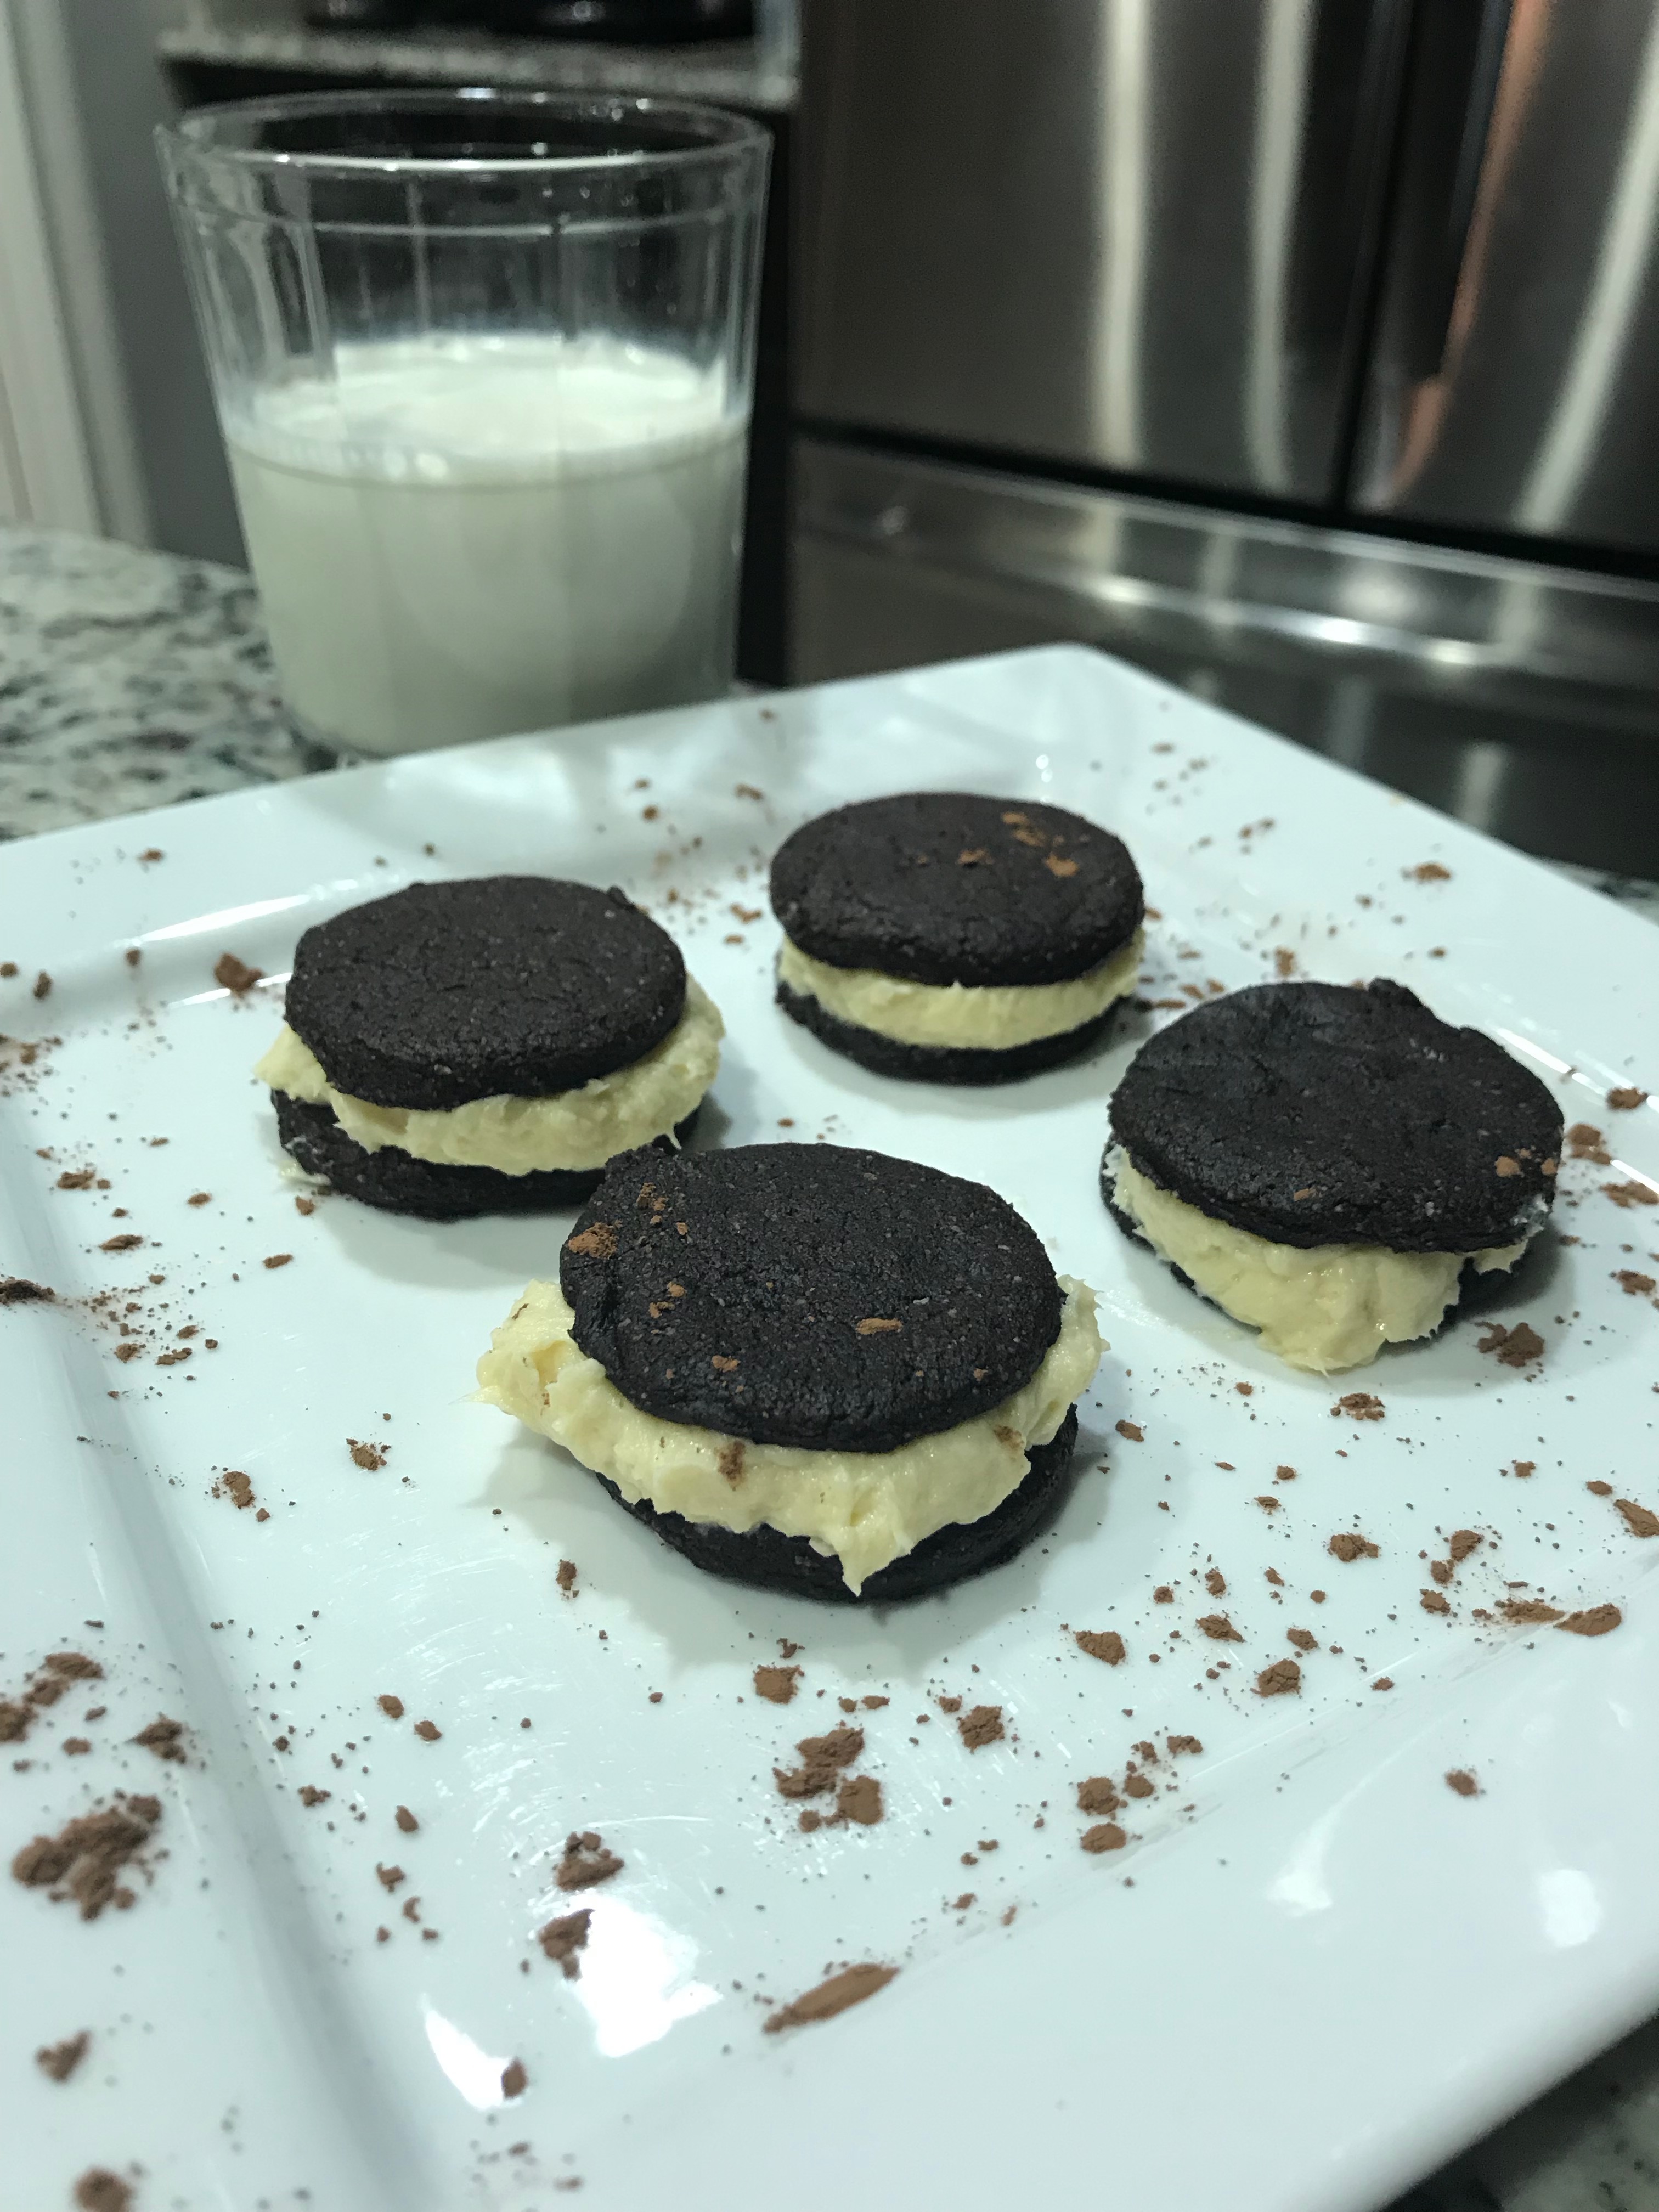 Keto Oreo Cookies